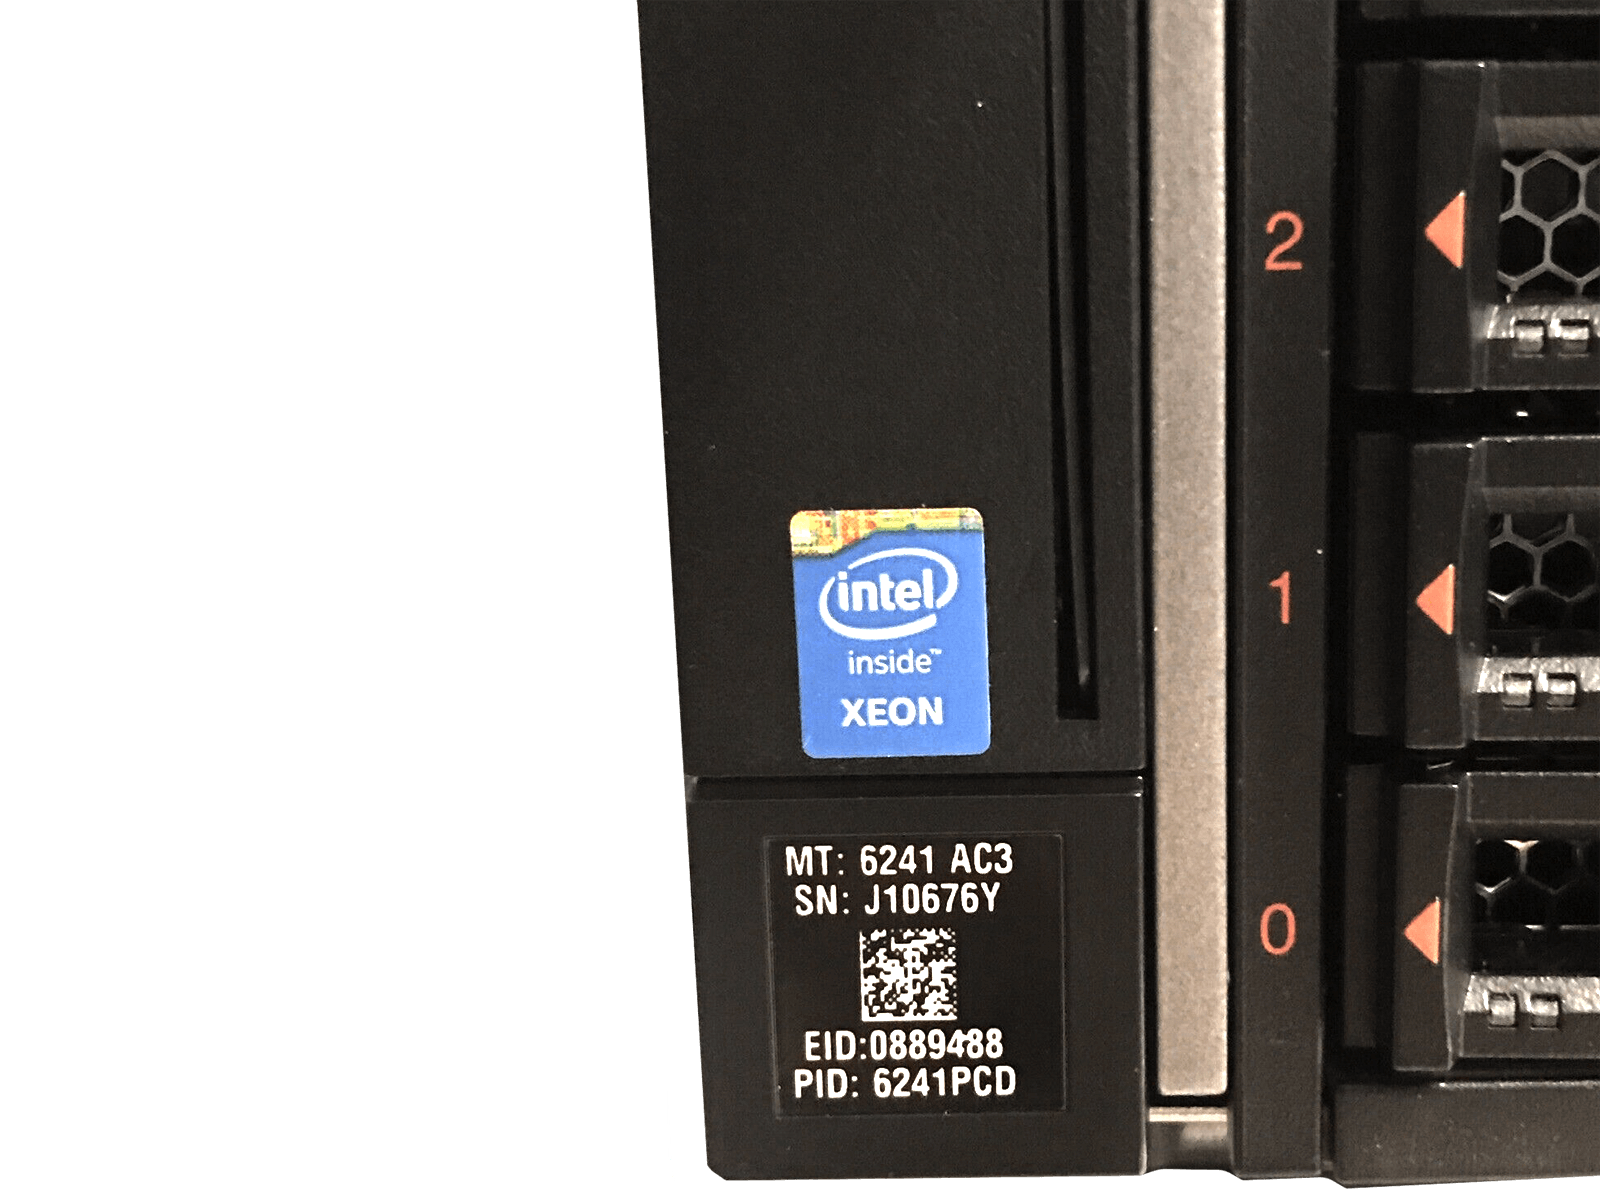 IBM x3850 X6 Server 4x Xeon E7-8880 v3 2048GB DDR4 RAM 3x 300GB 15K 4x 1400W PSU